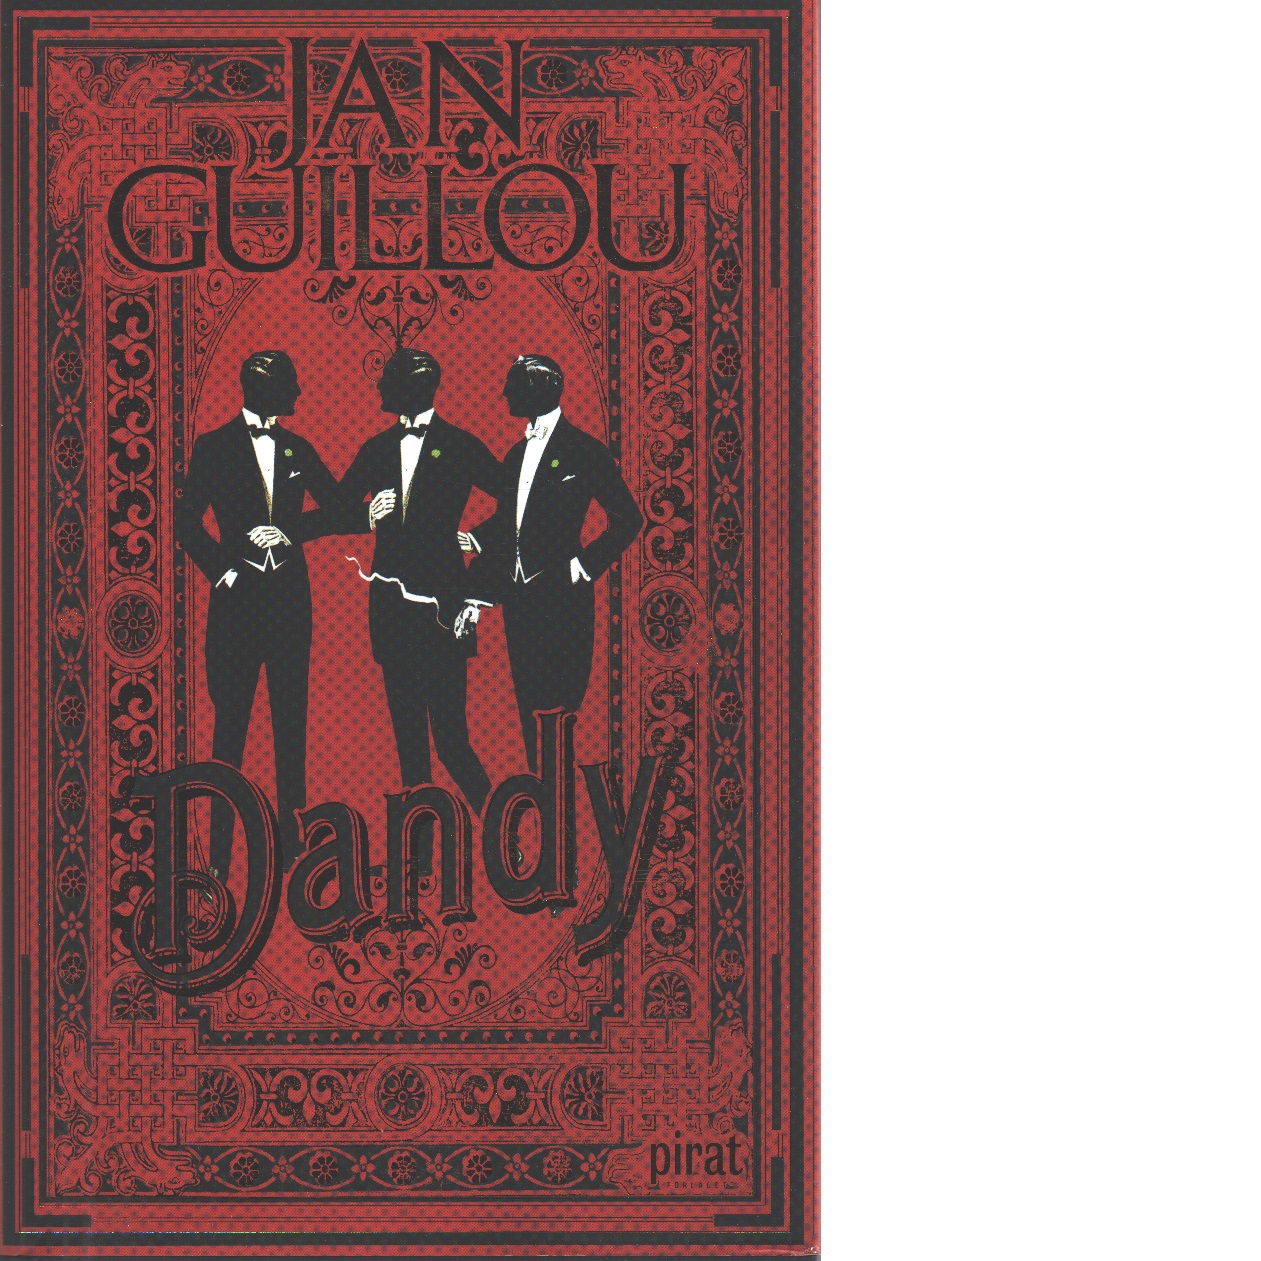 Dandy - Guillou, Jan